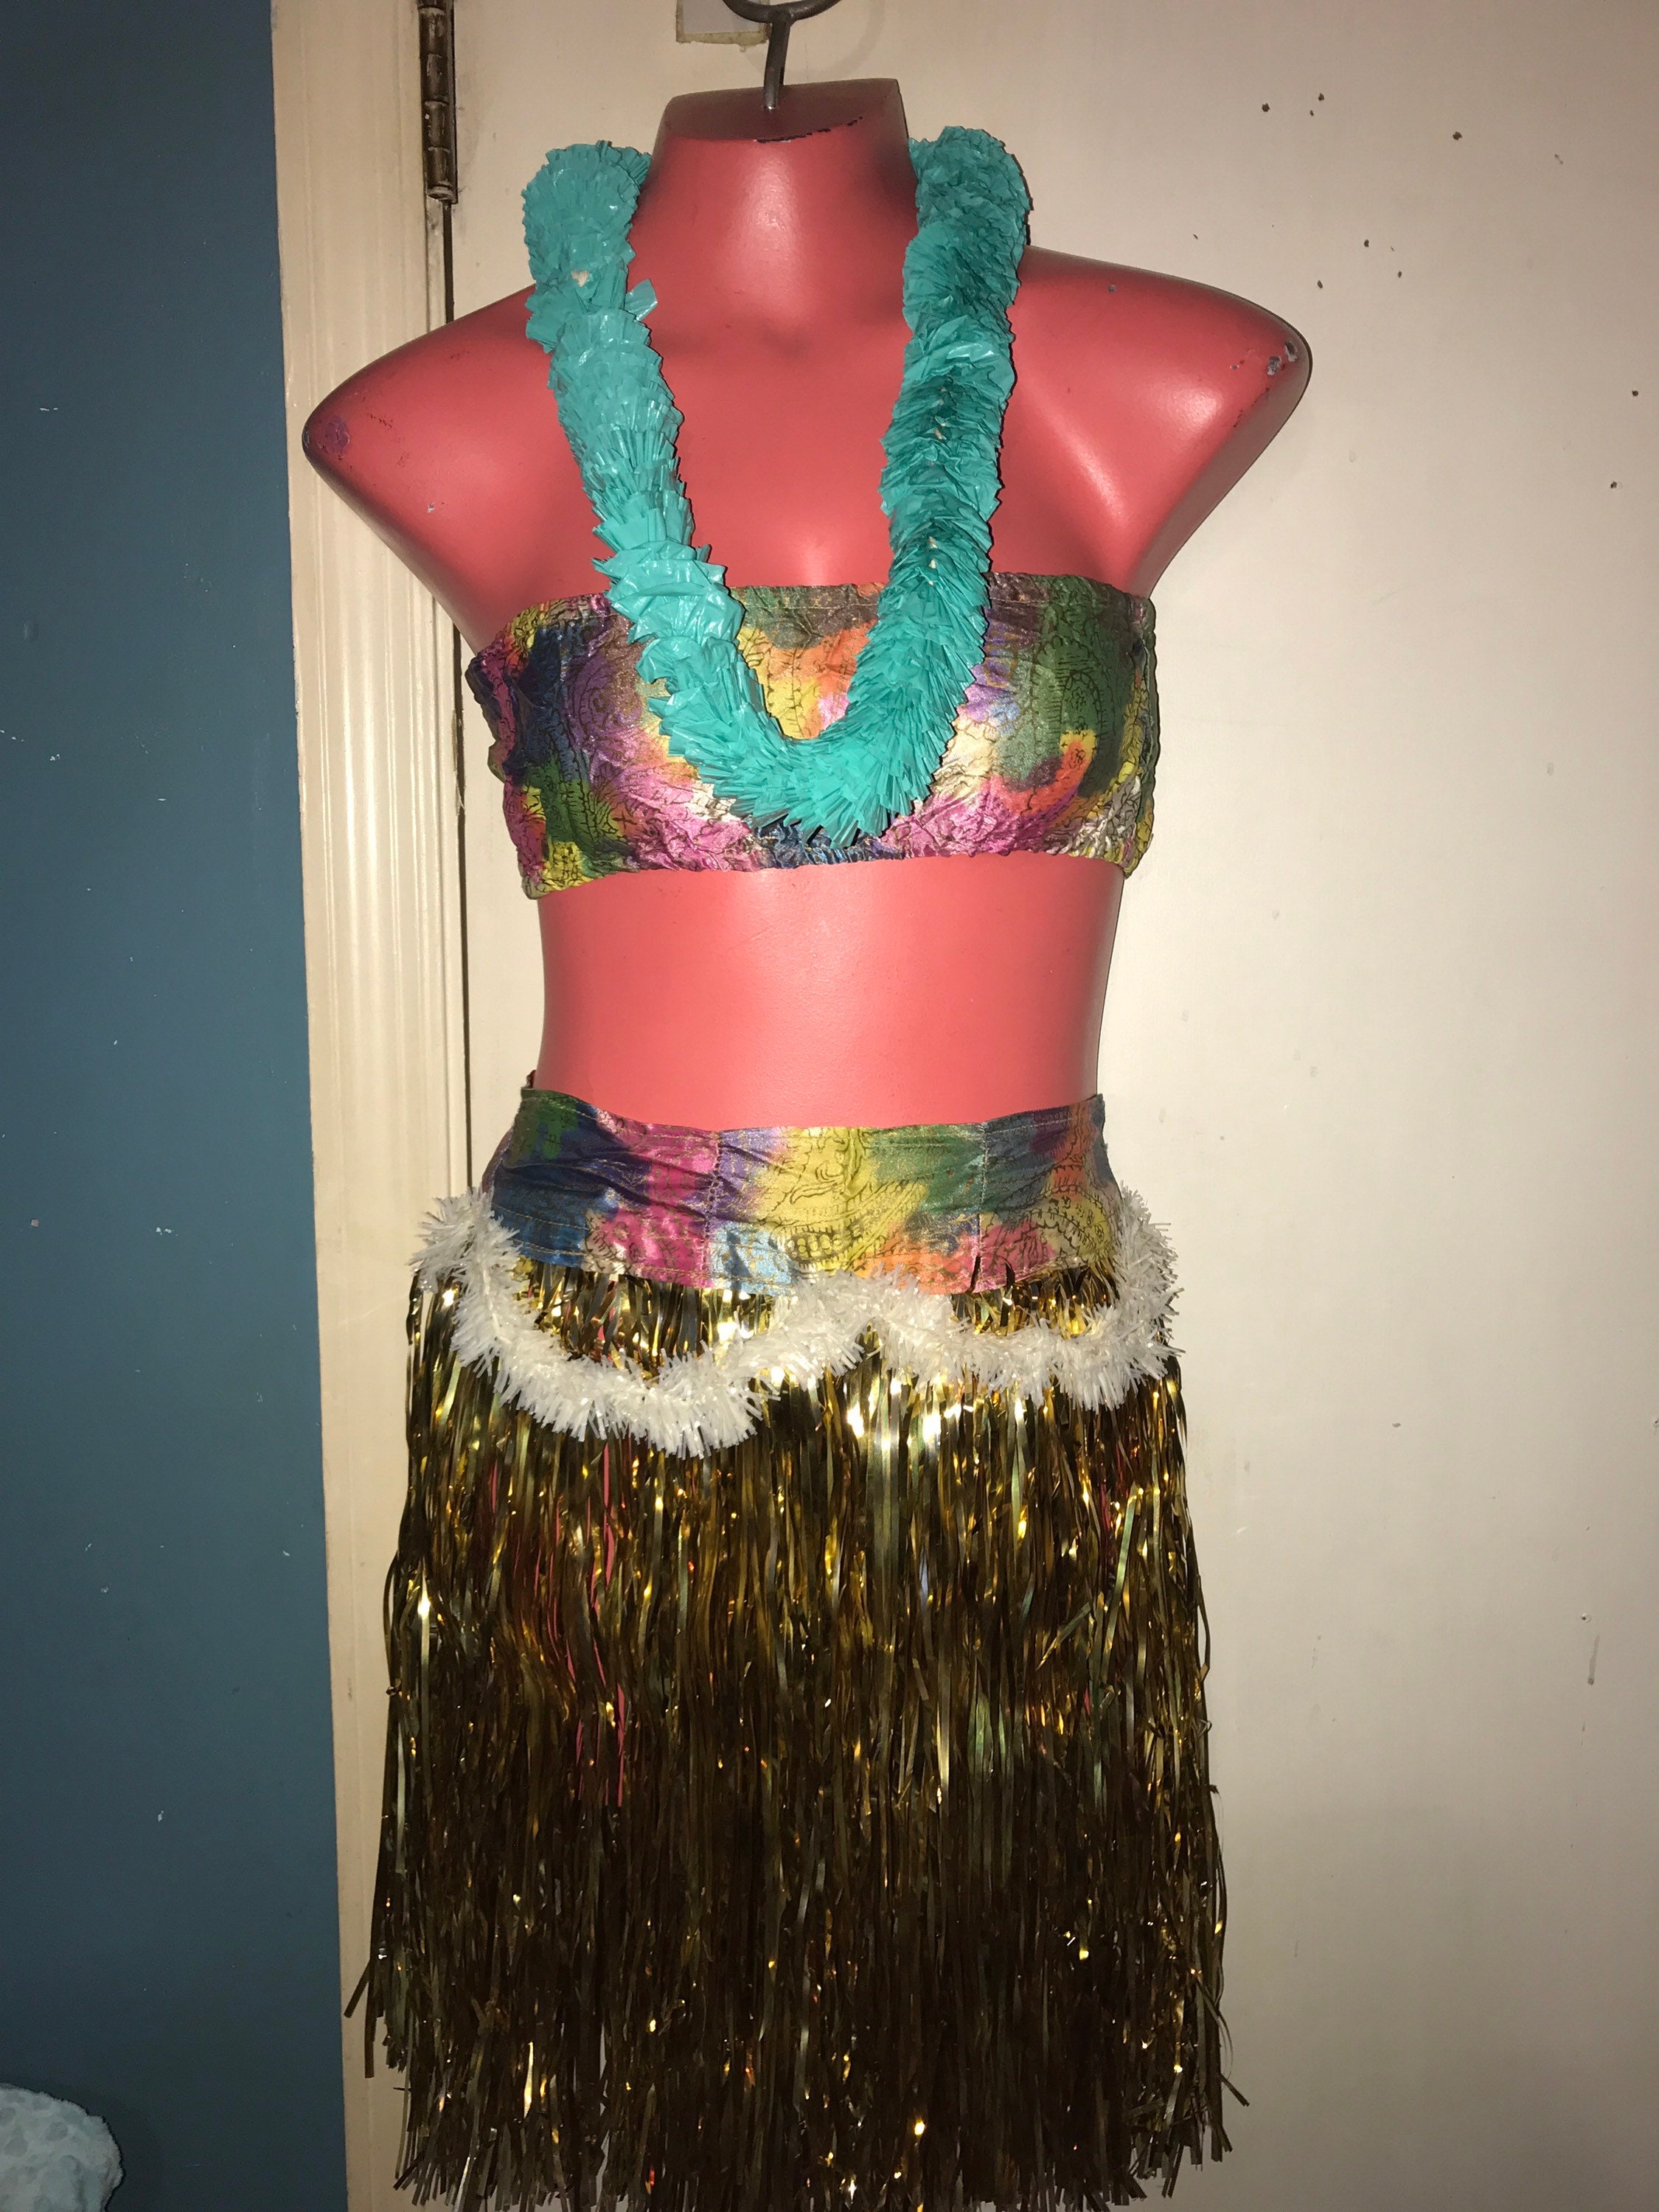 Hula Dancer Costume